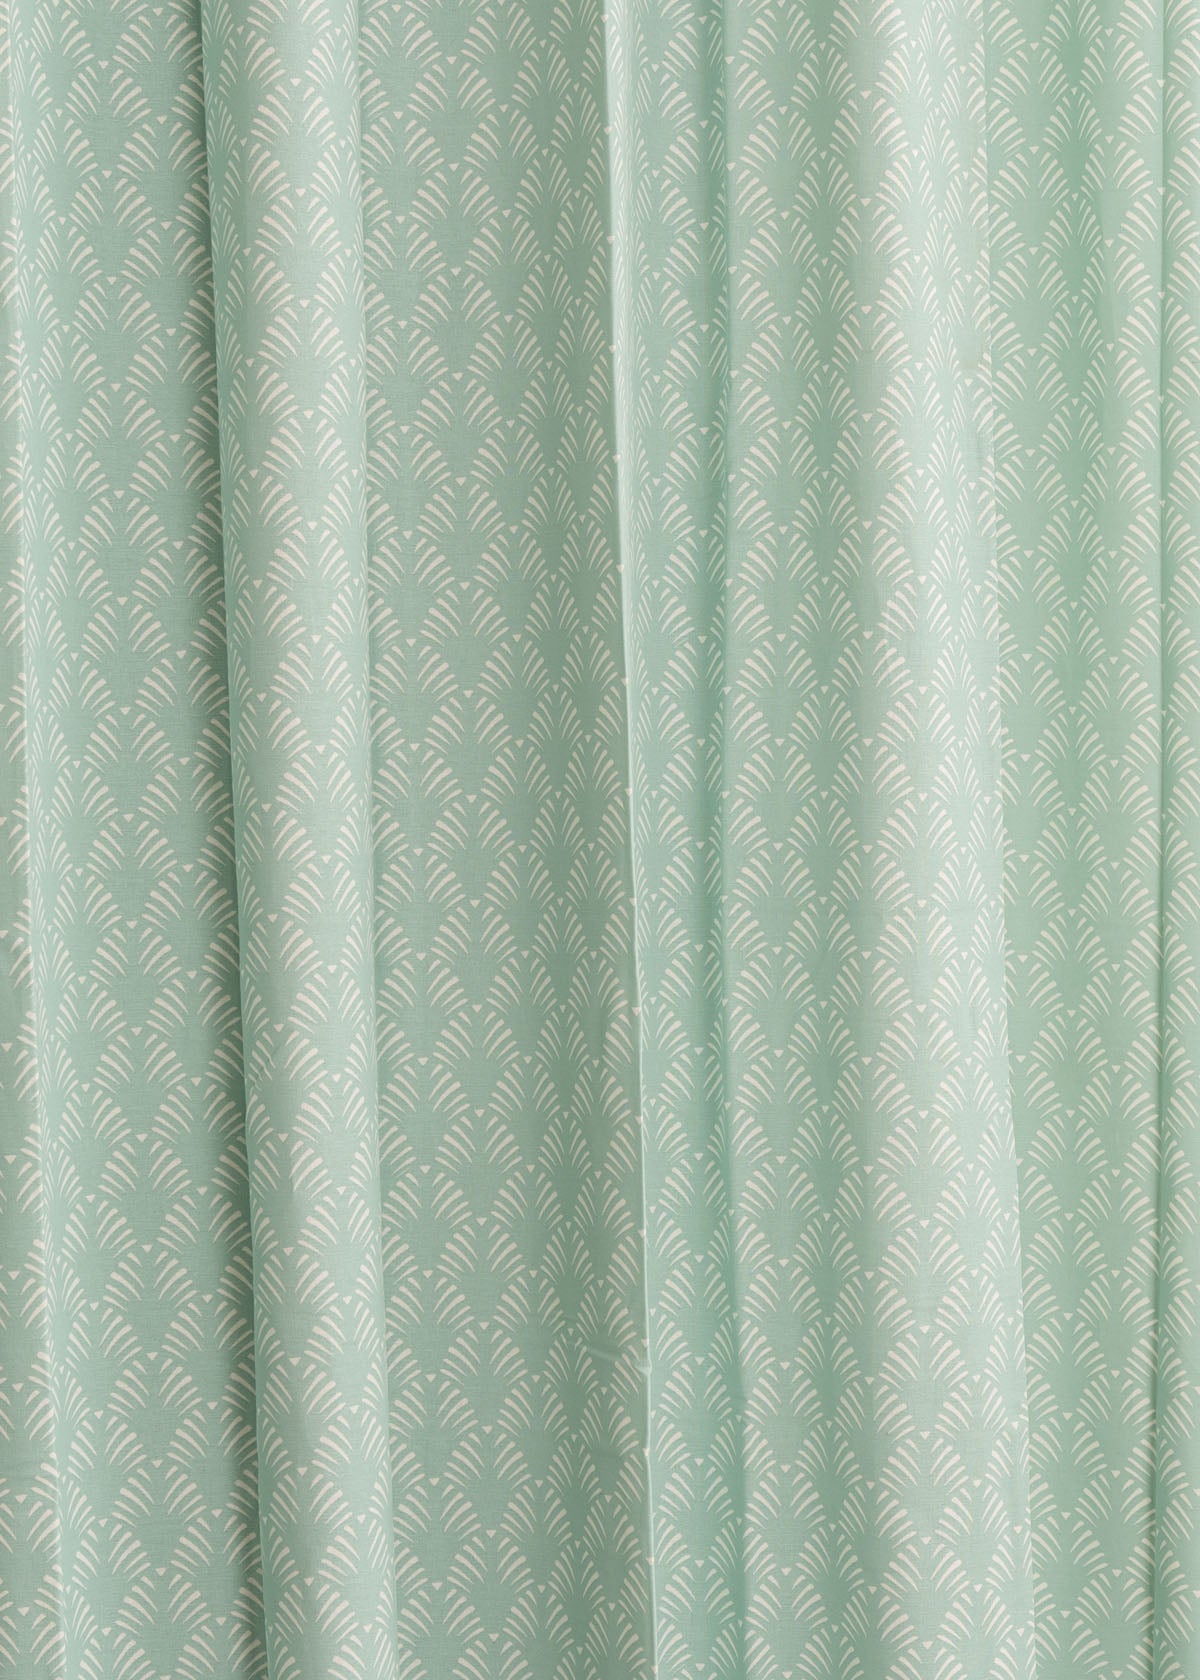 Pergola Printed Cotton Curtain - Nile Blue